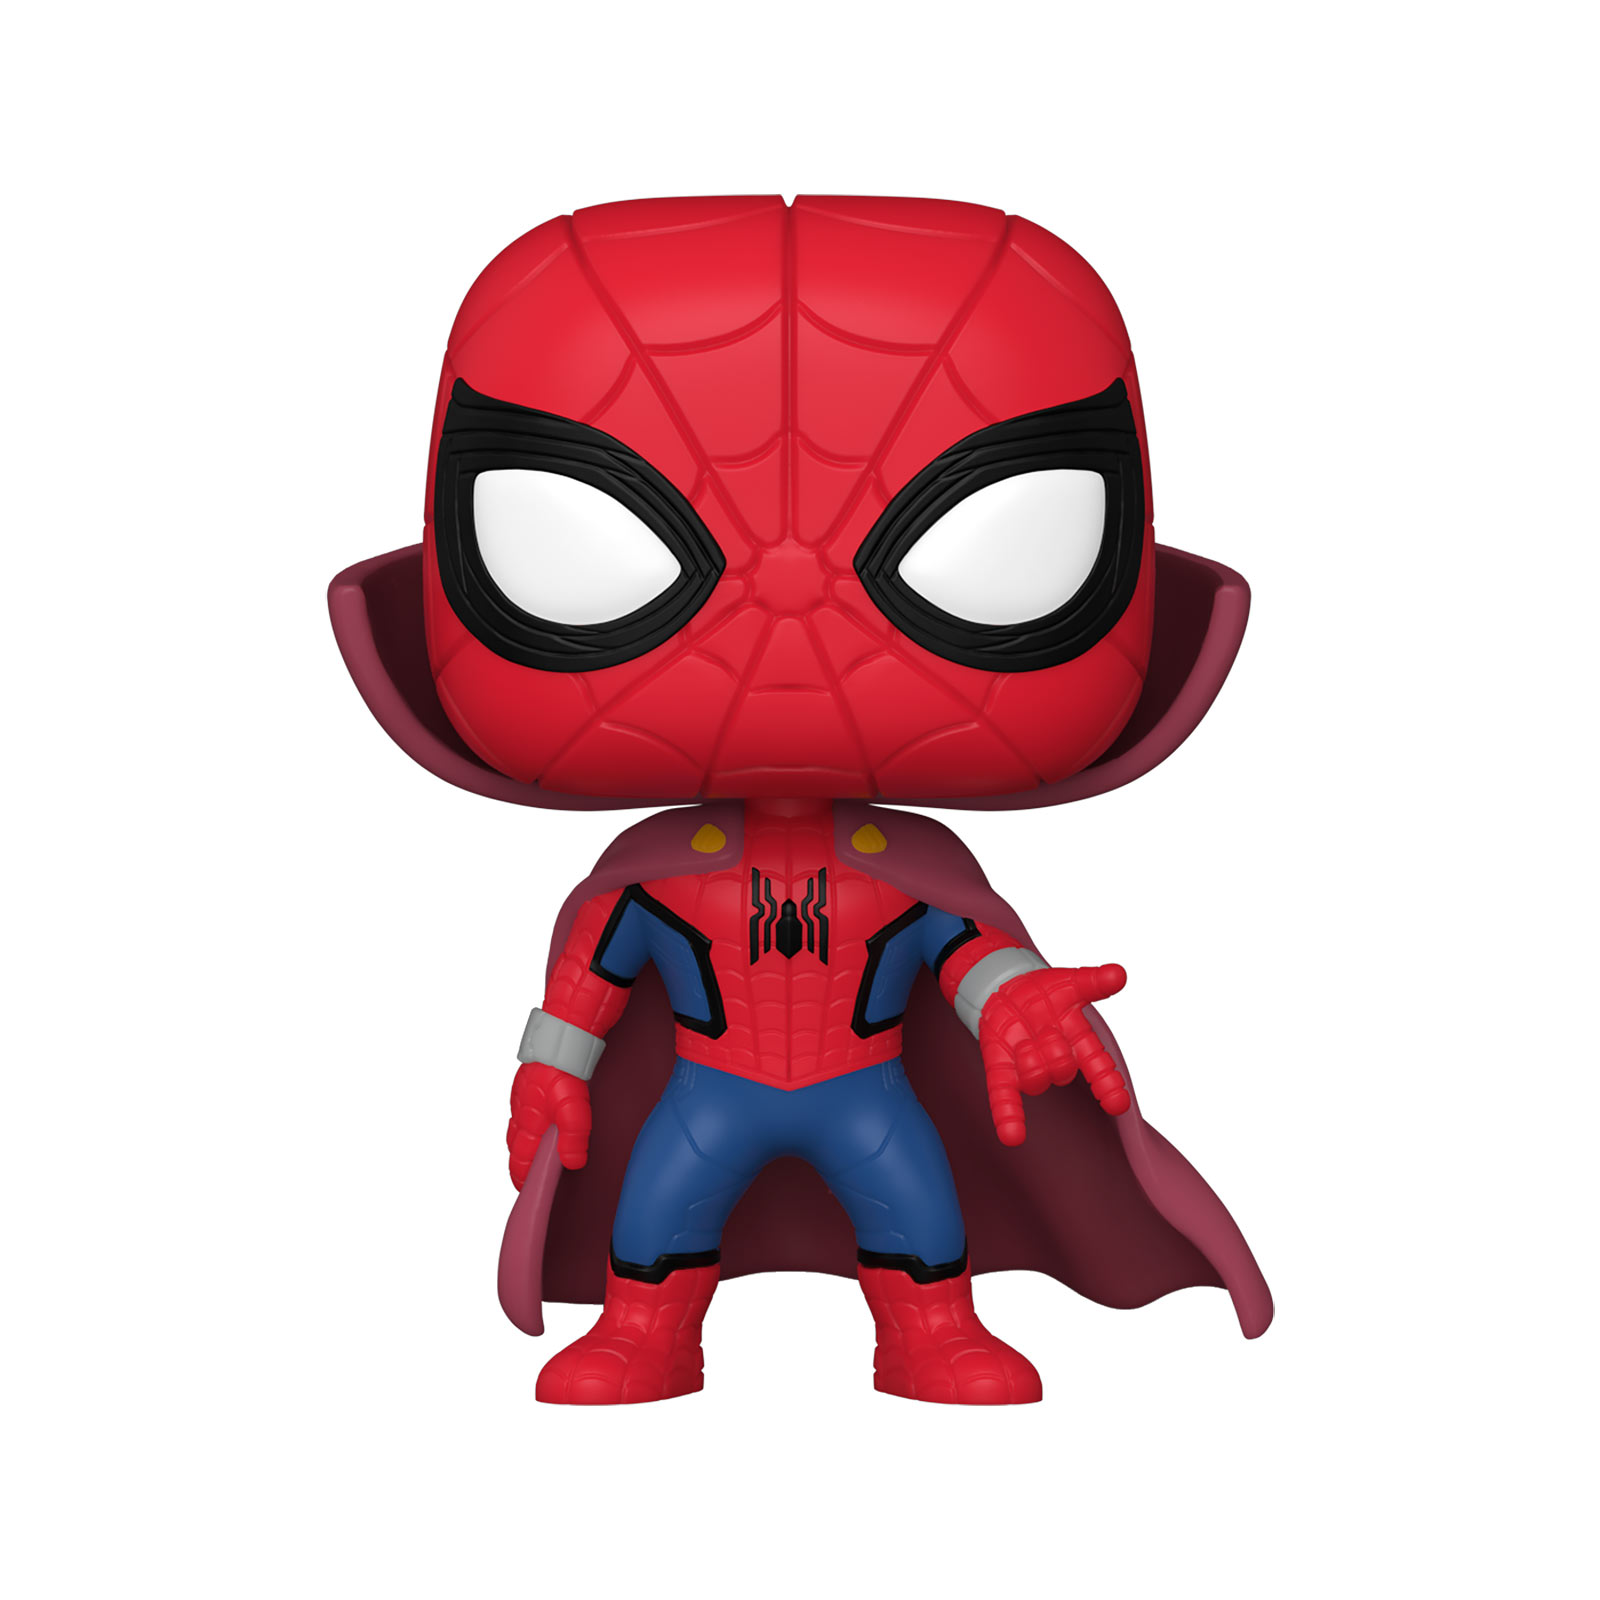 Spider-Man - Zombie Hunter Spidey Funko Pop Figure